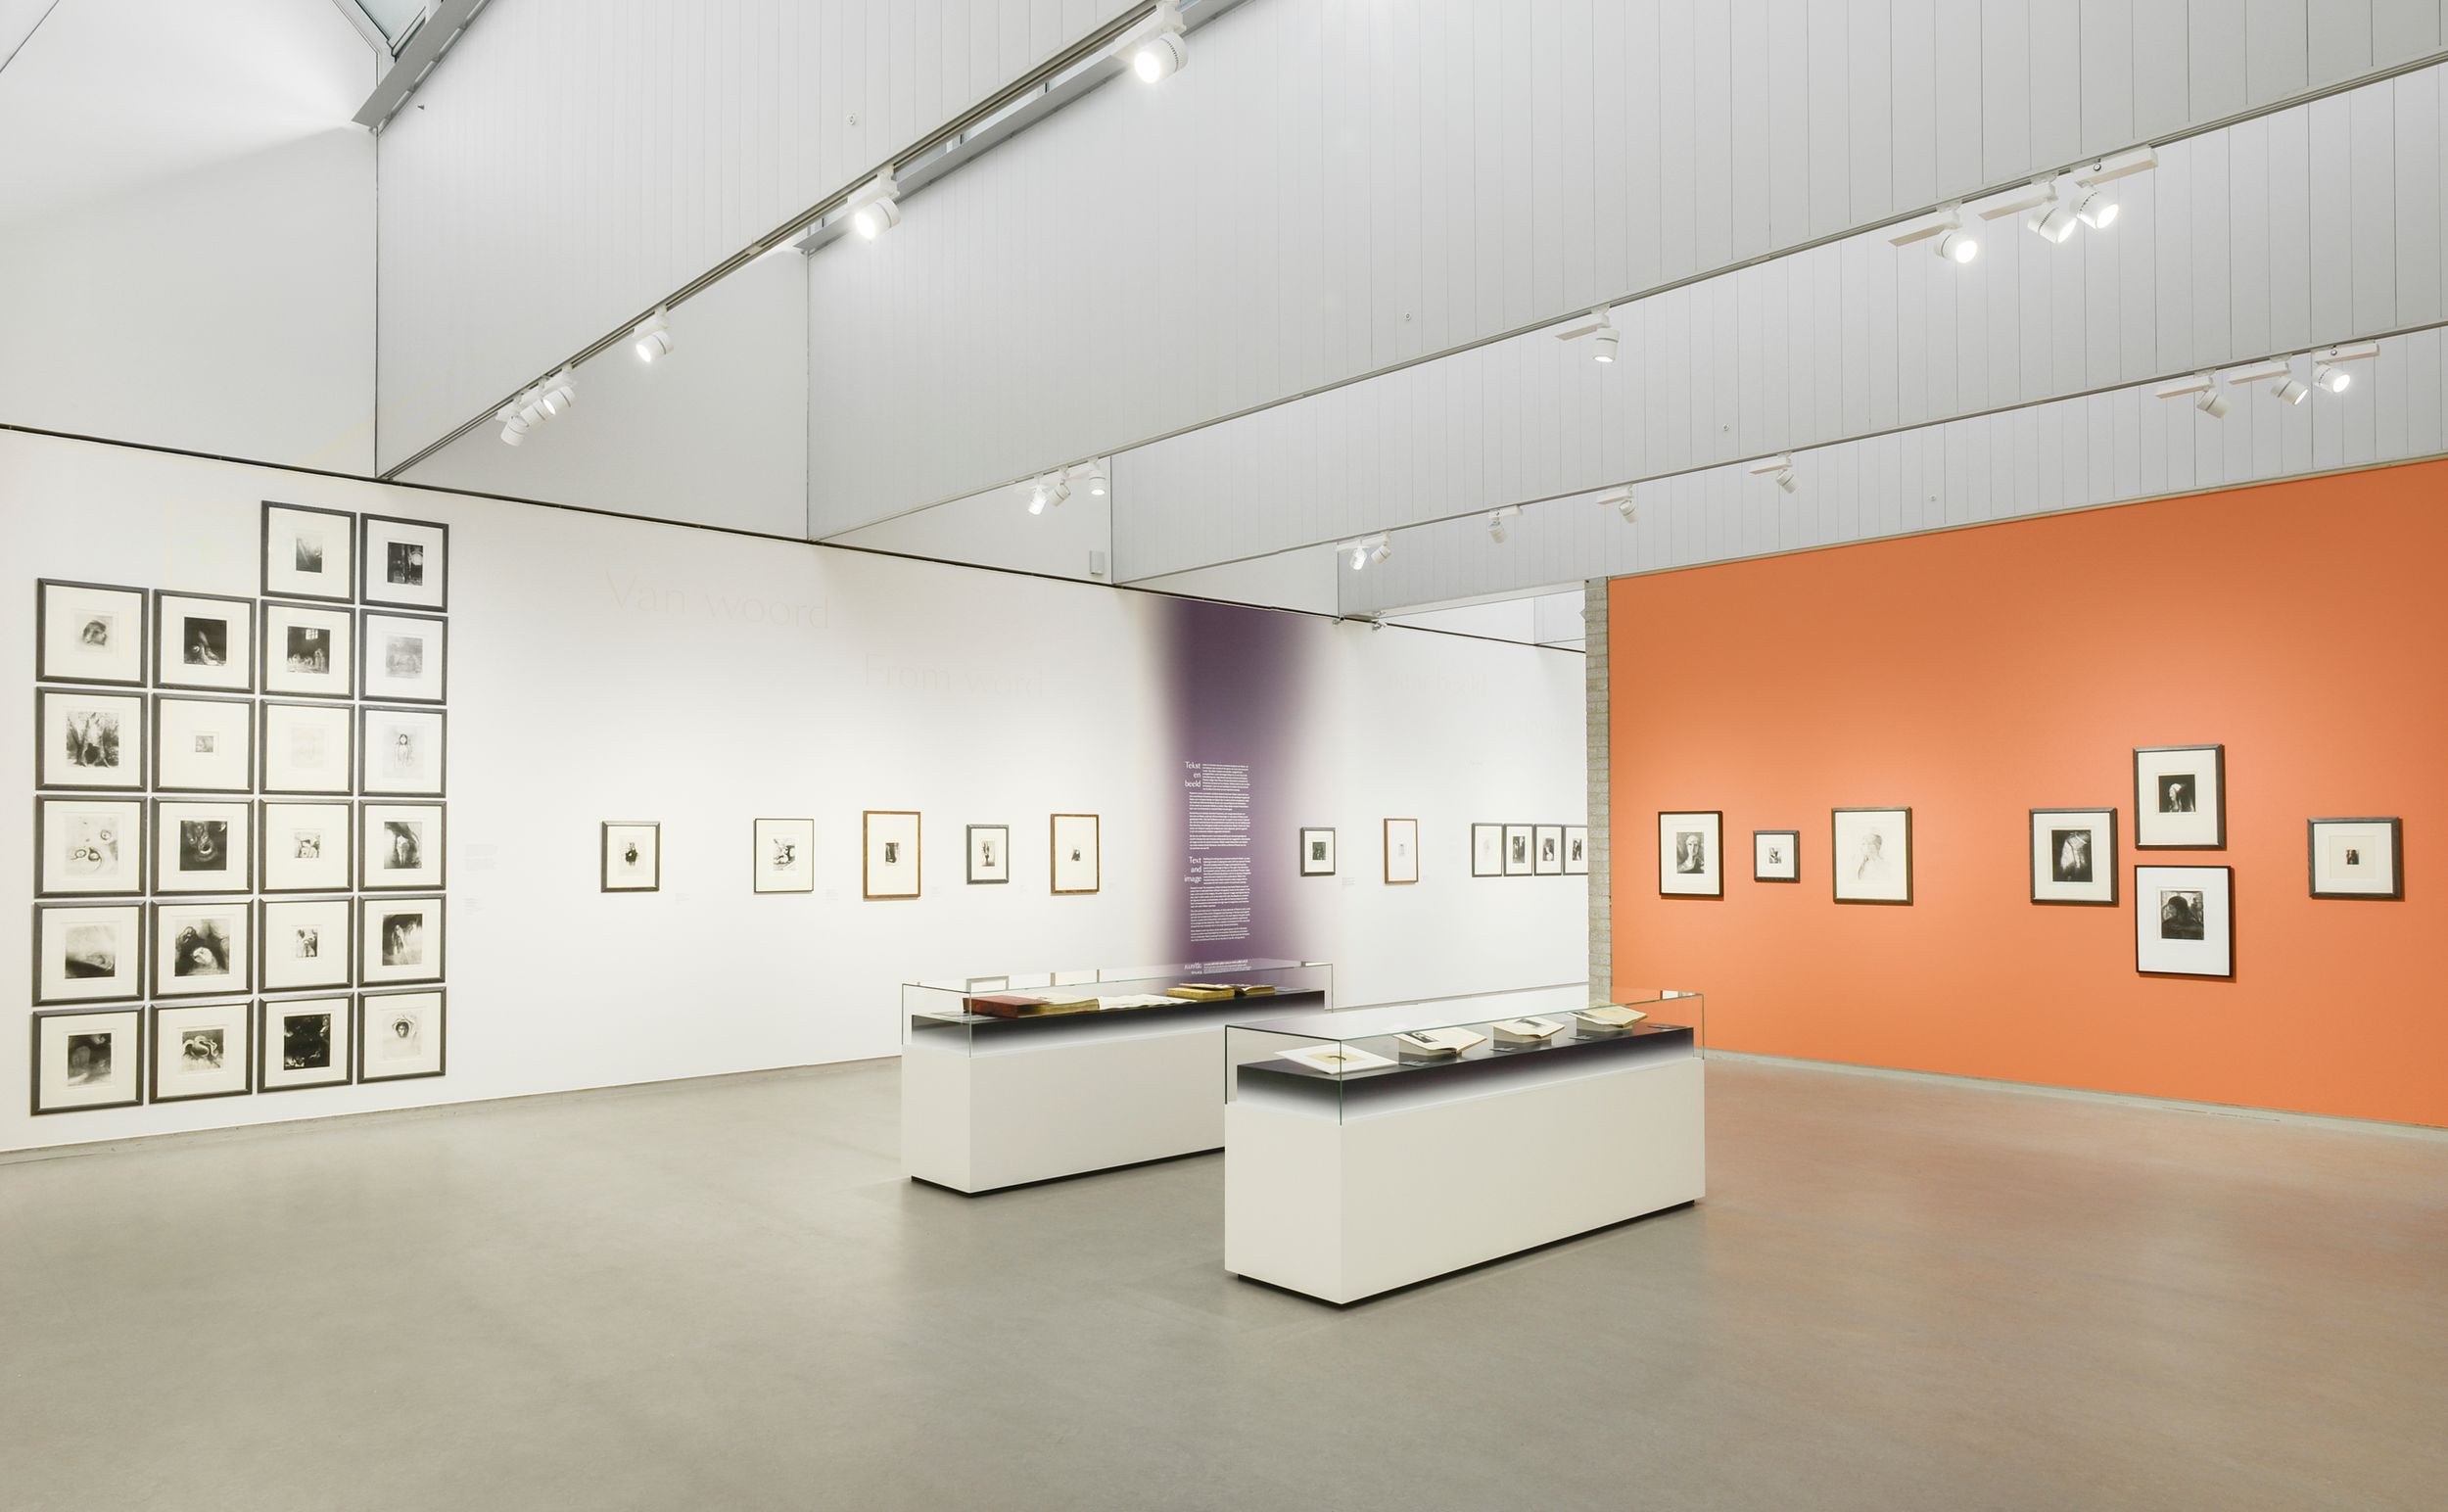 Odilon Redon. La littérature et la musique, exhibition view at Kröller-Müller Museum, Otterlo 2018, photo Marjon Gemmeke